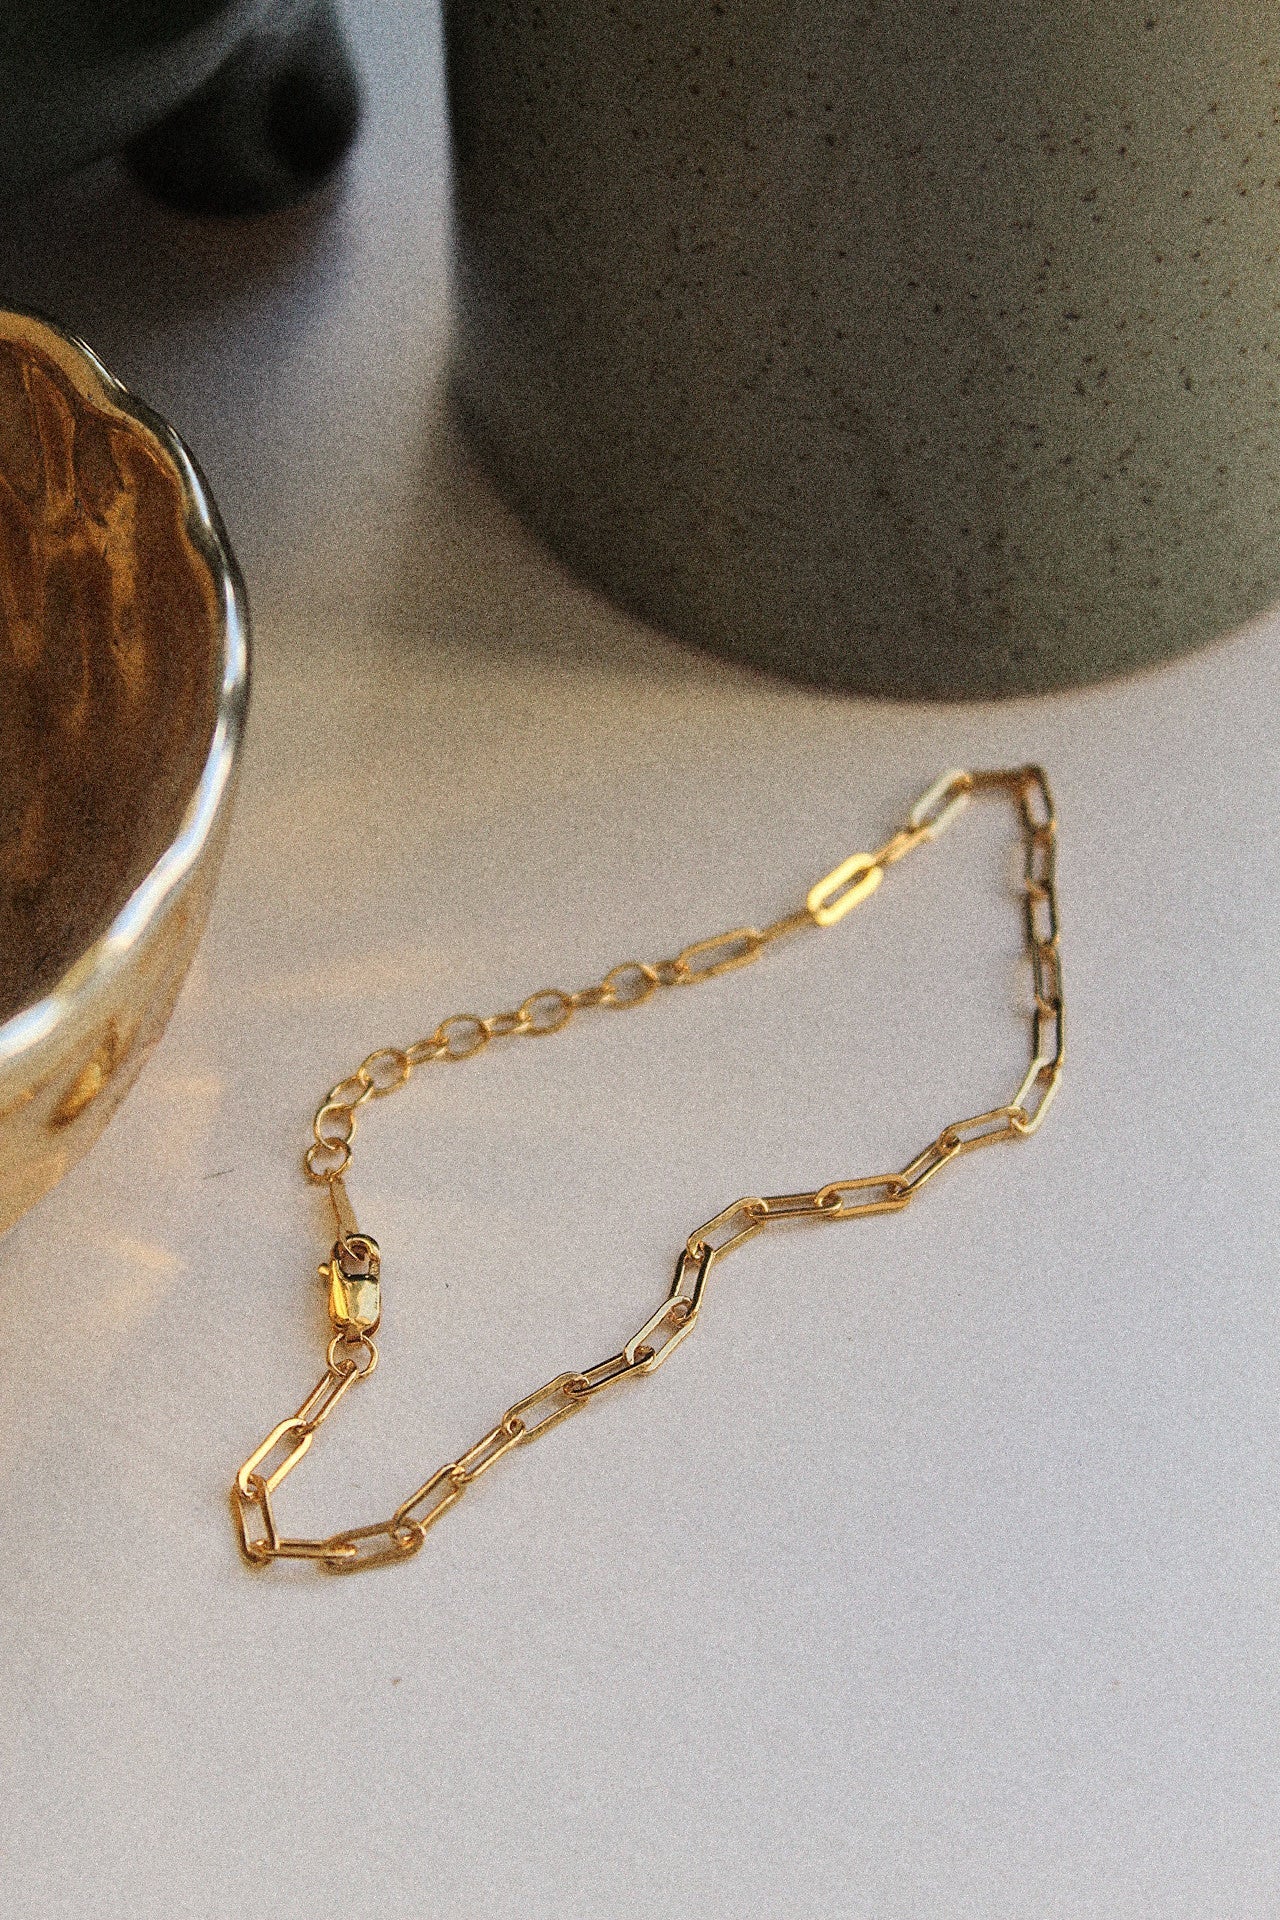 14K Gold Paperclip Necklace and Bracelet Set - Jewellery Hut